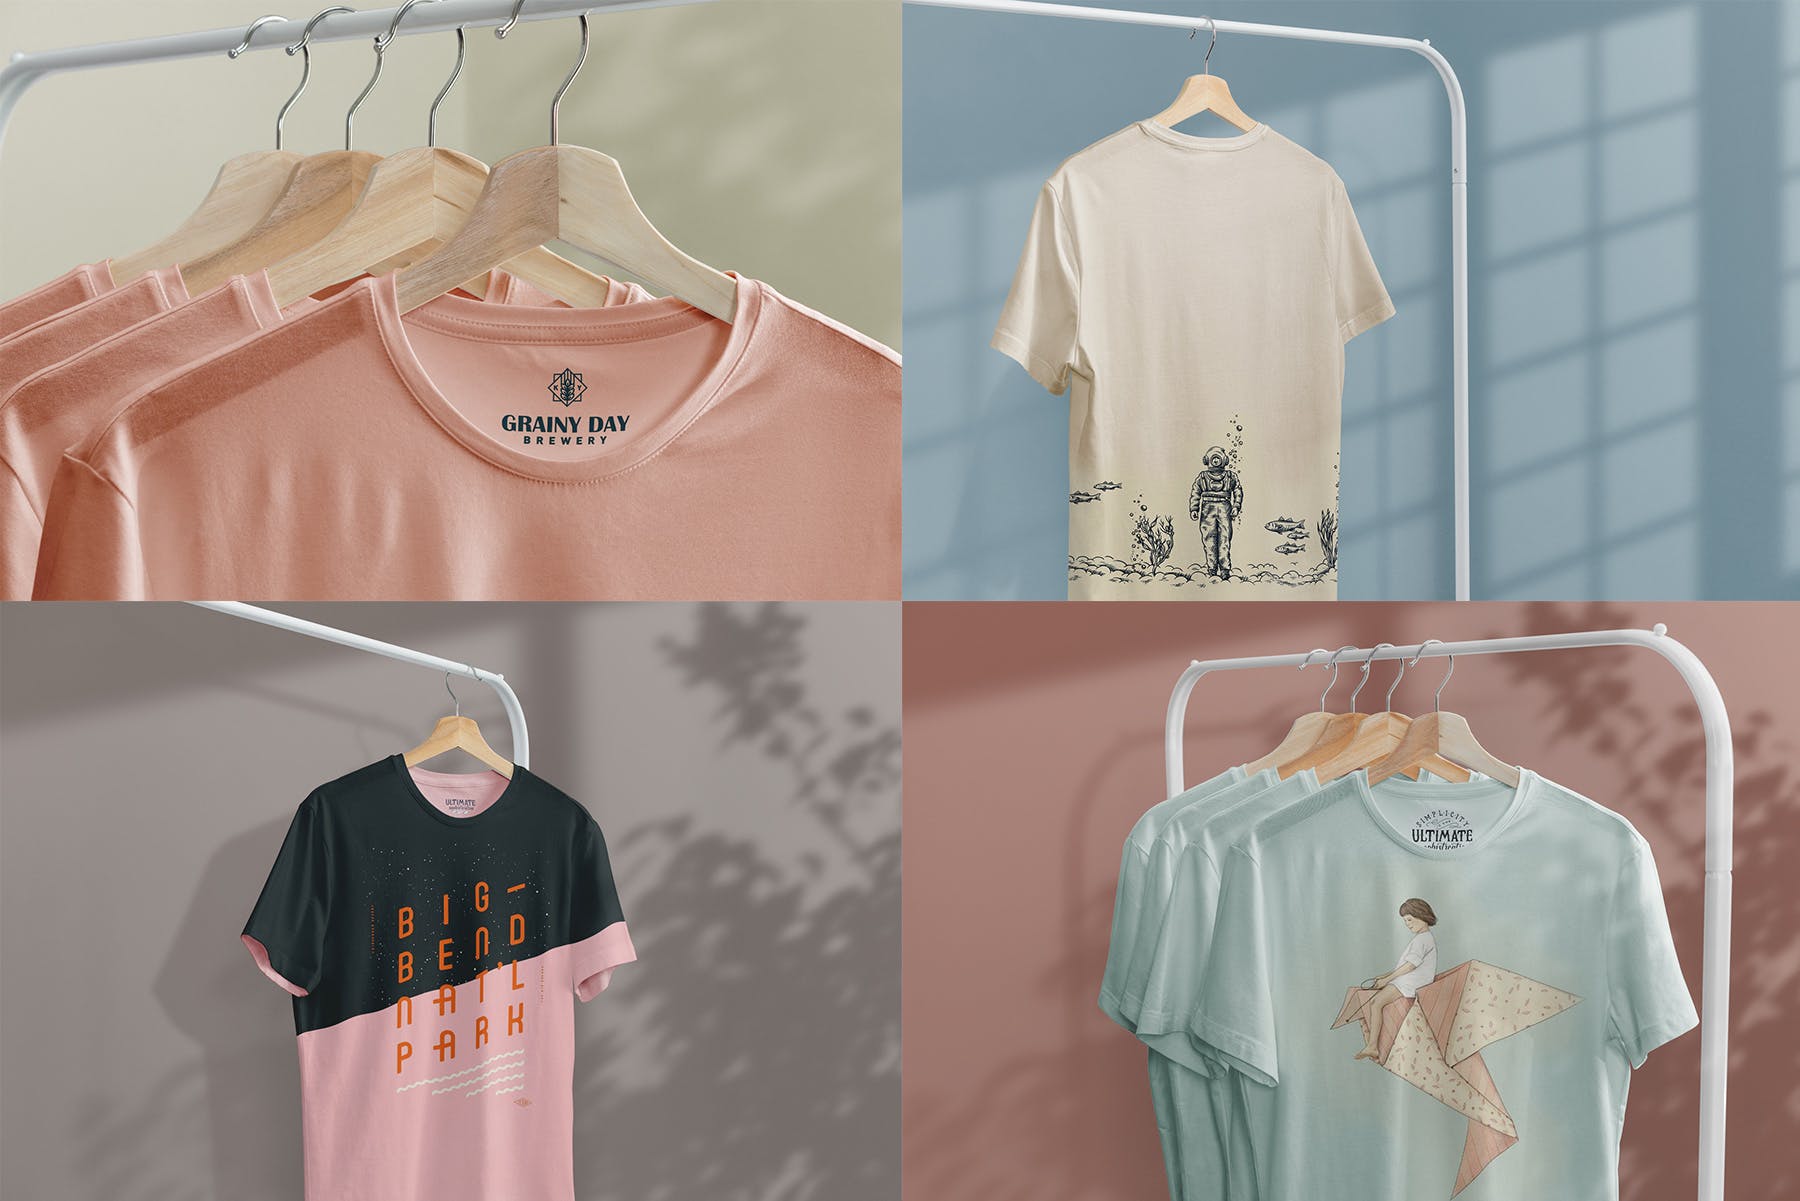 简易晾衣架T恤设计效果图样机第一素材精选 T-Shirt Mock-Up on Hanger插图(9)